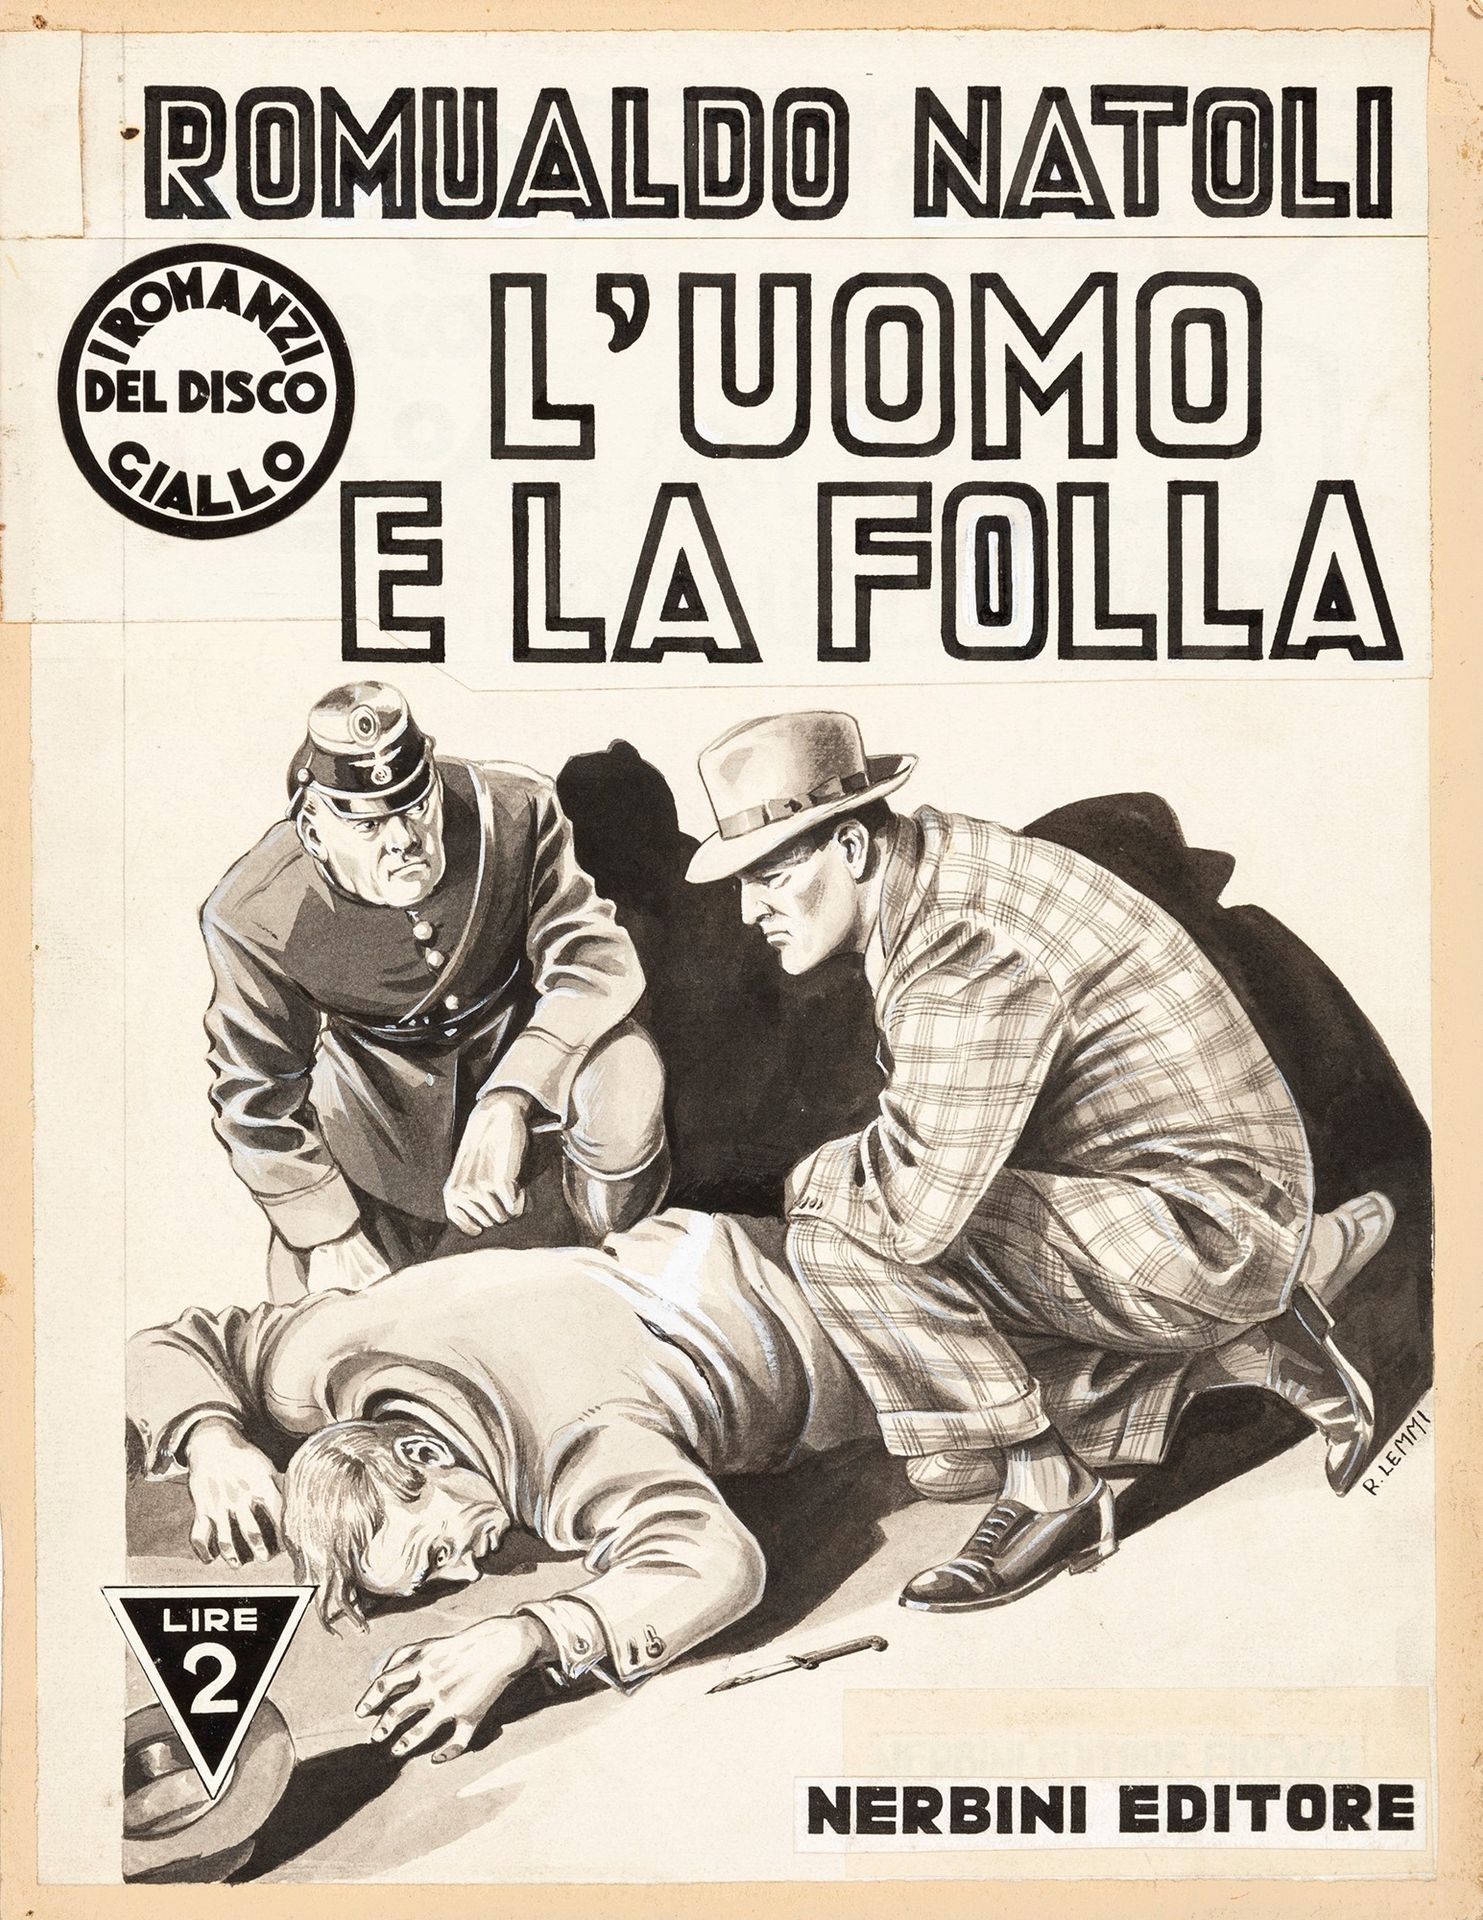 Roberto Lemmi L'uomo e la folla, 1941

pencil, ink and watercolor on thin cardbo&hellip;